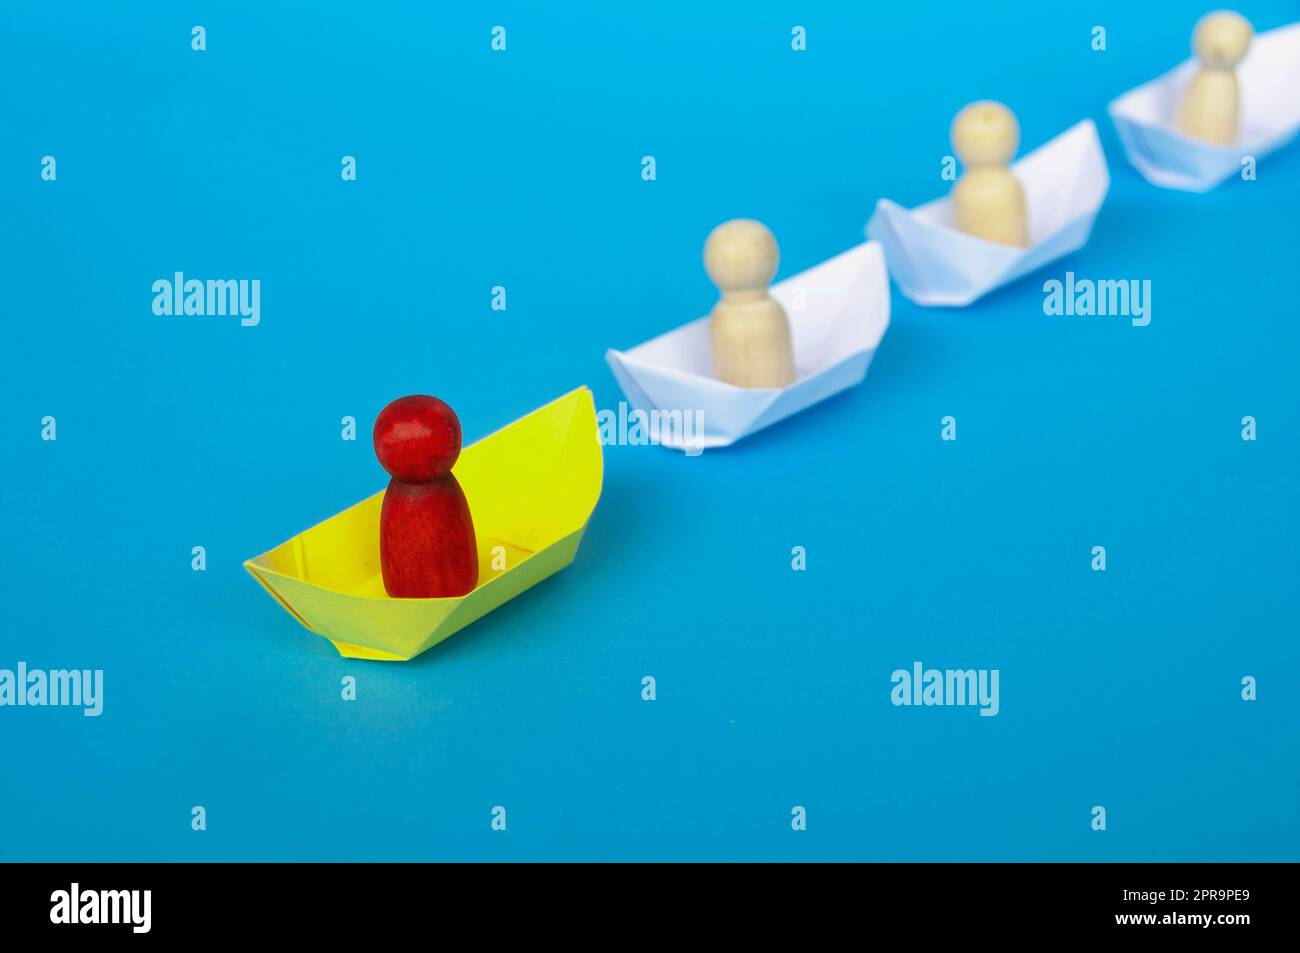 Concetto di leadership - figura di legno rossa su origami di carta gialla che guida il resto della figura su una nave di carta bianca. Foto Stock